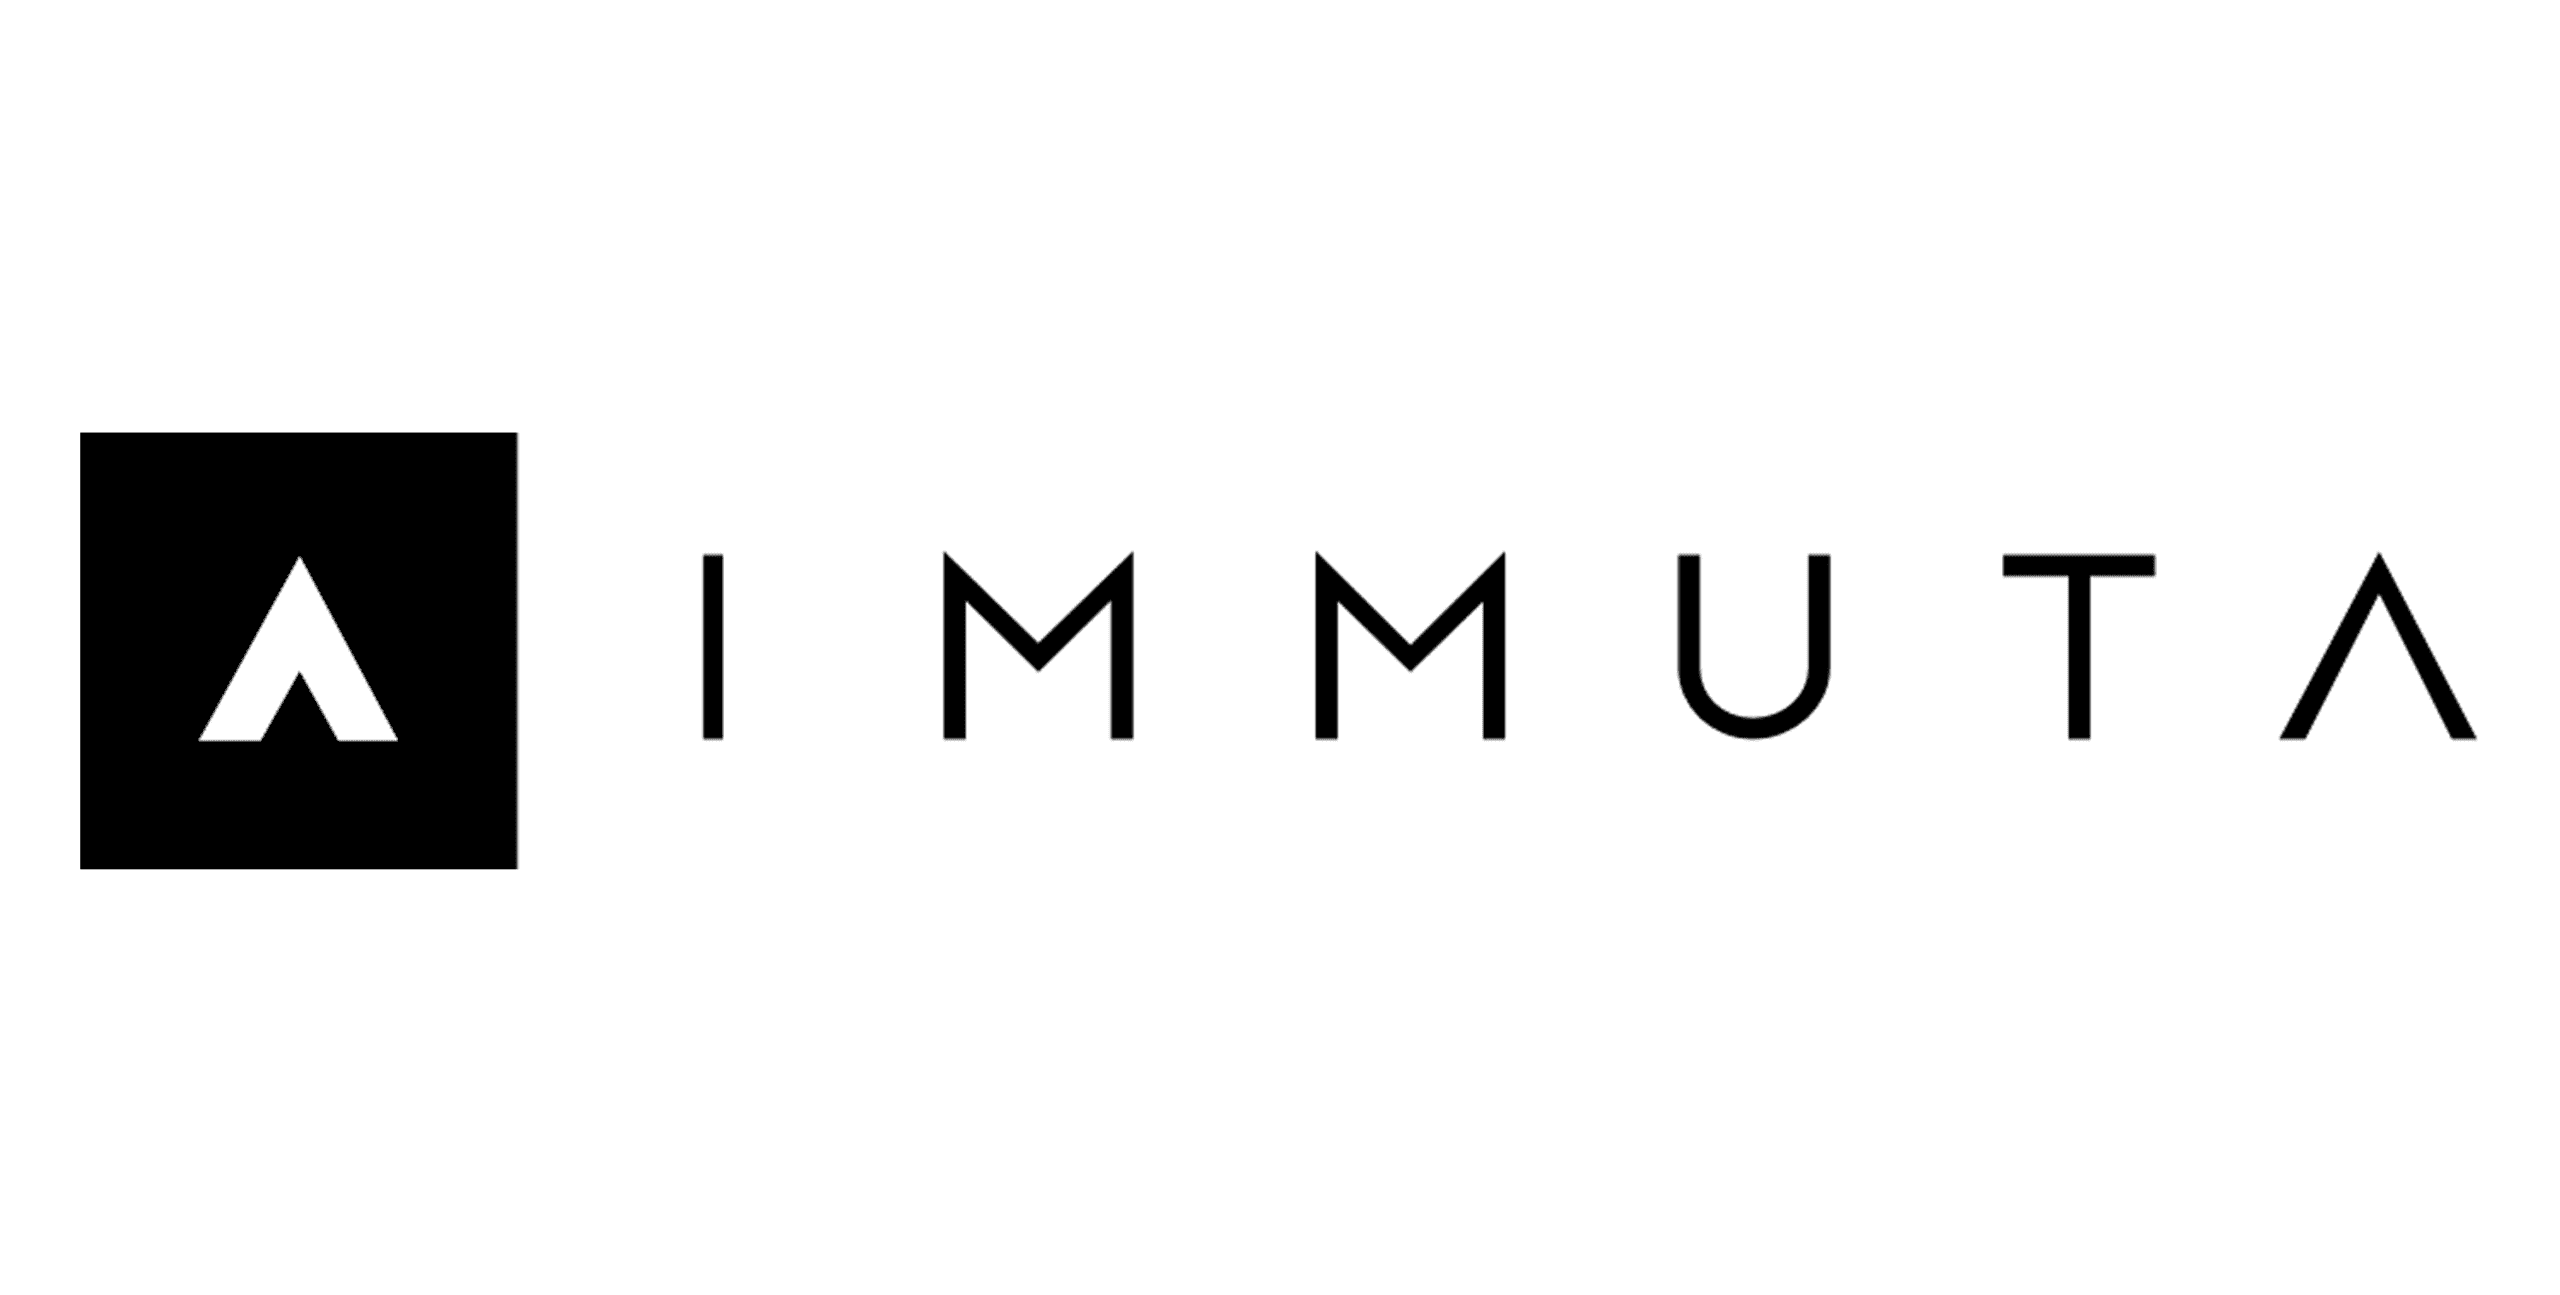 Immuta Logo